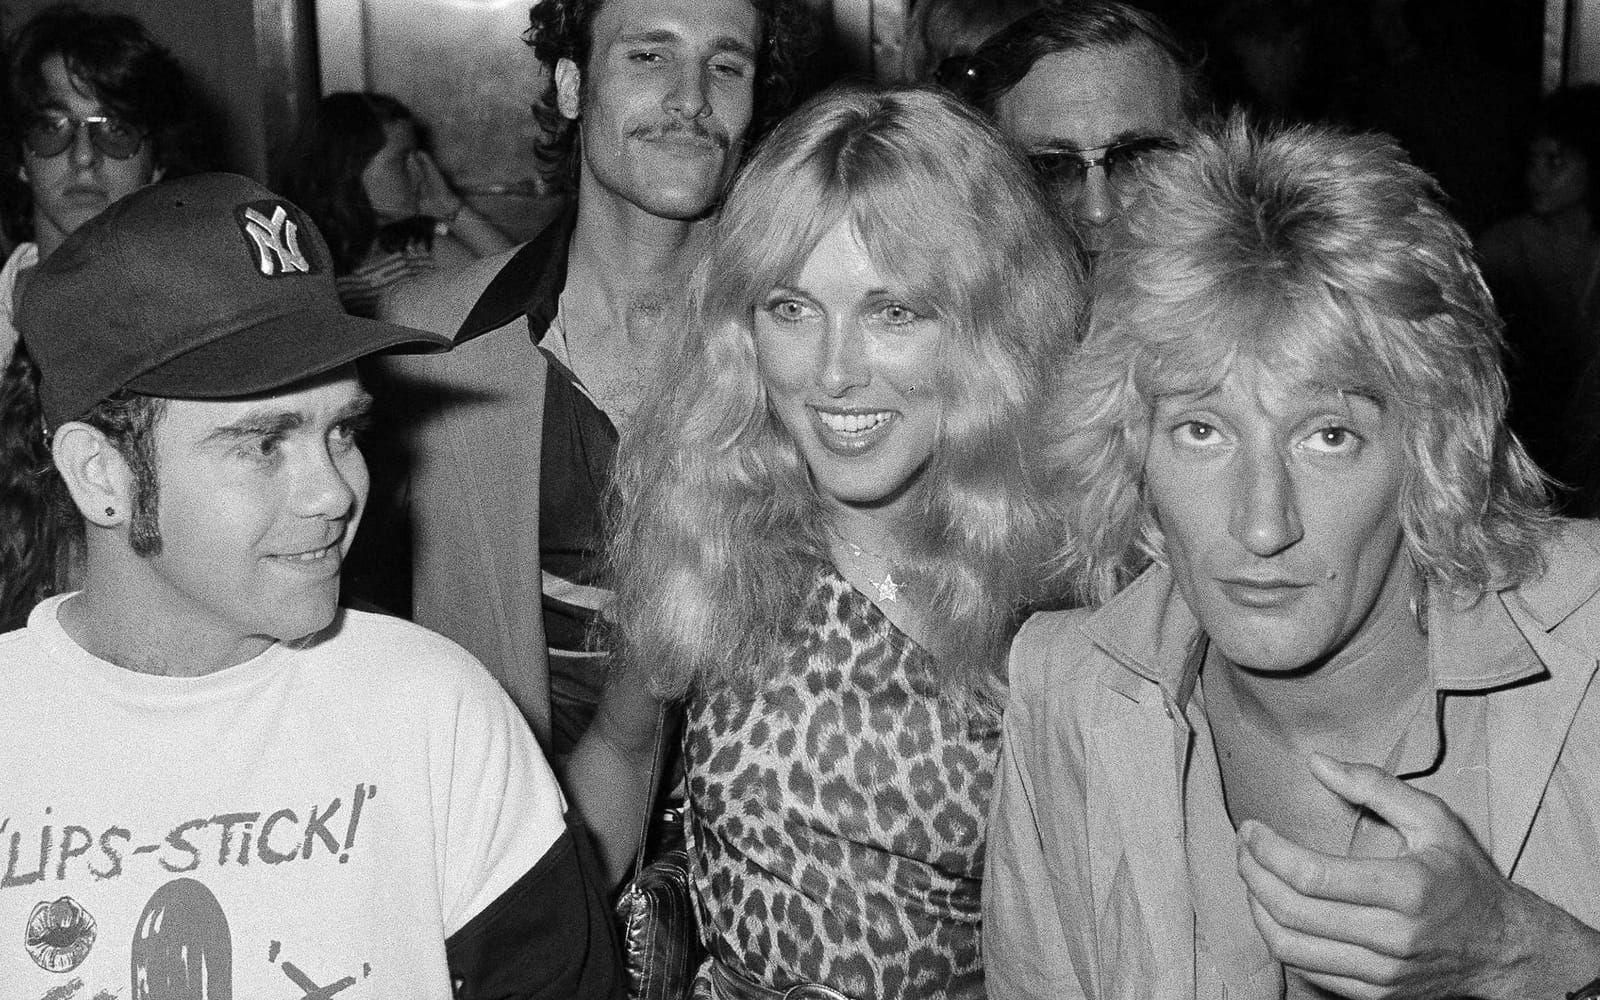 1978: På Studio 54 igen, den här gången med artistvännen Rod Stewart och fotomodellen Alana Hamilton, sedermera Alana Stewart. Foto: TT